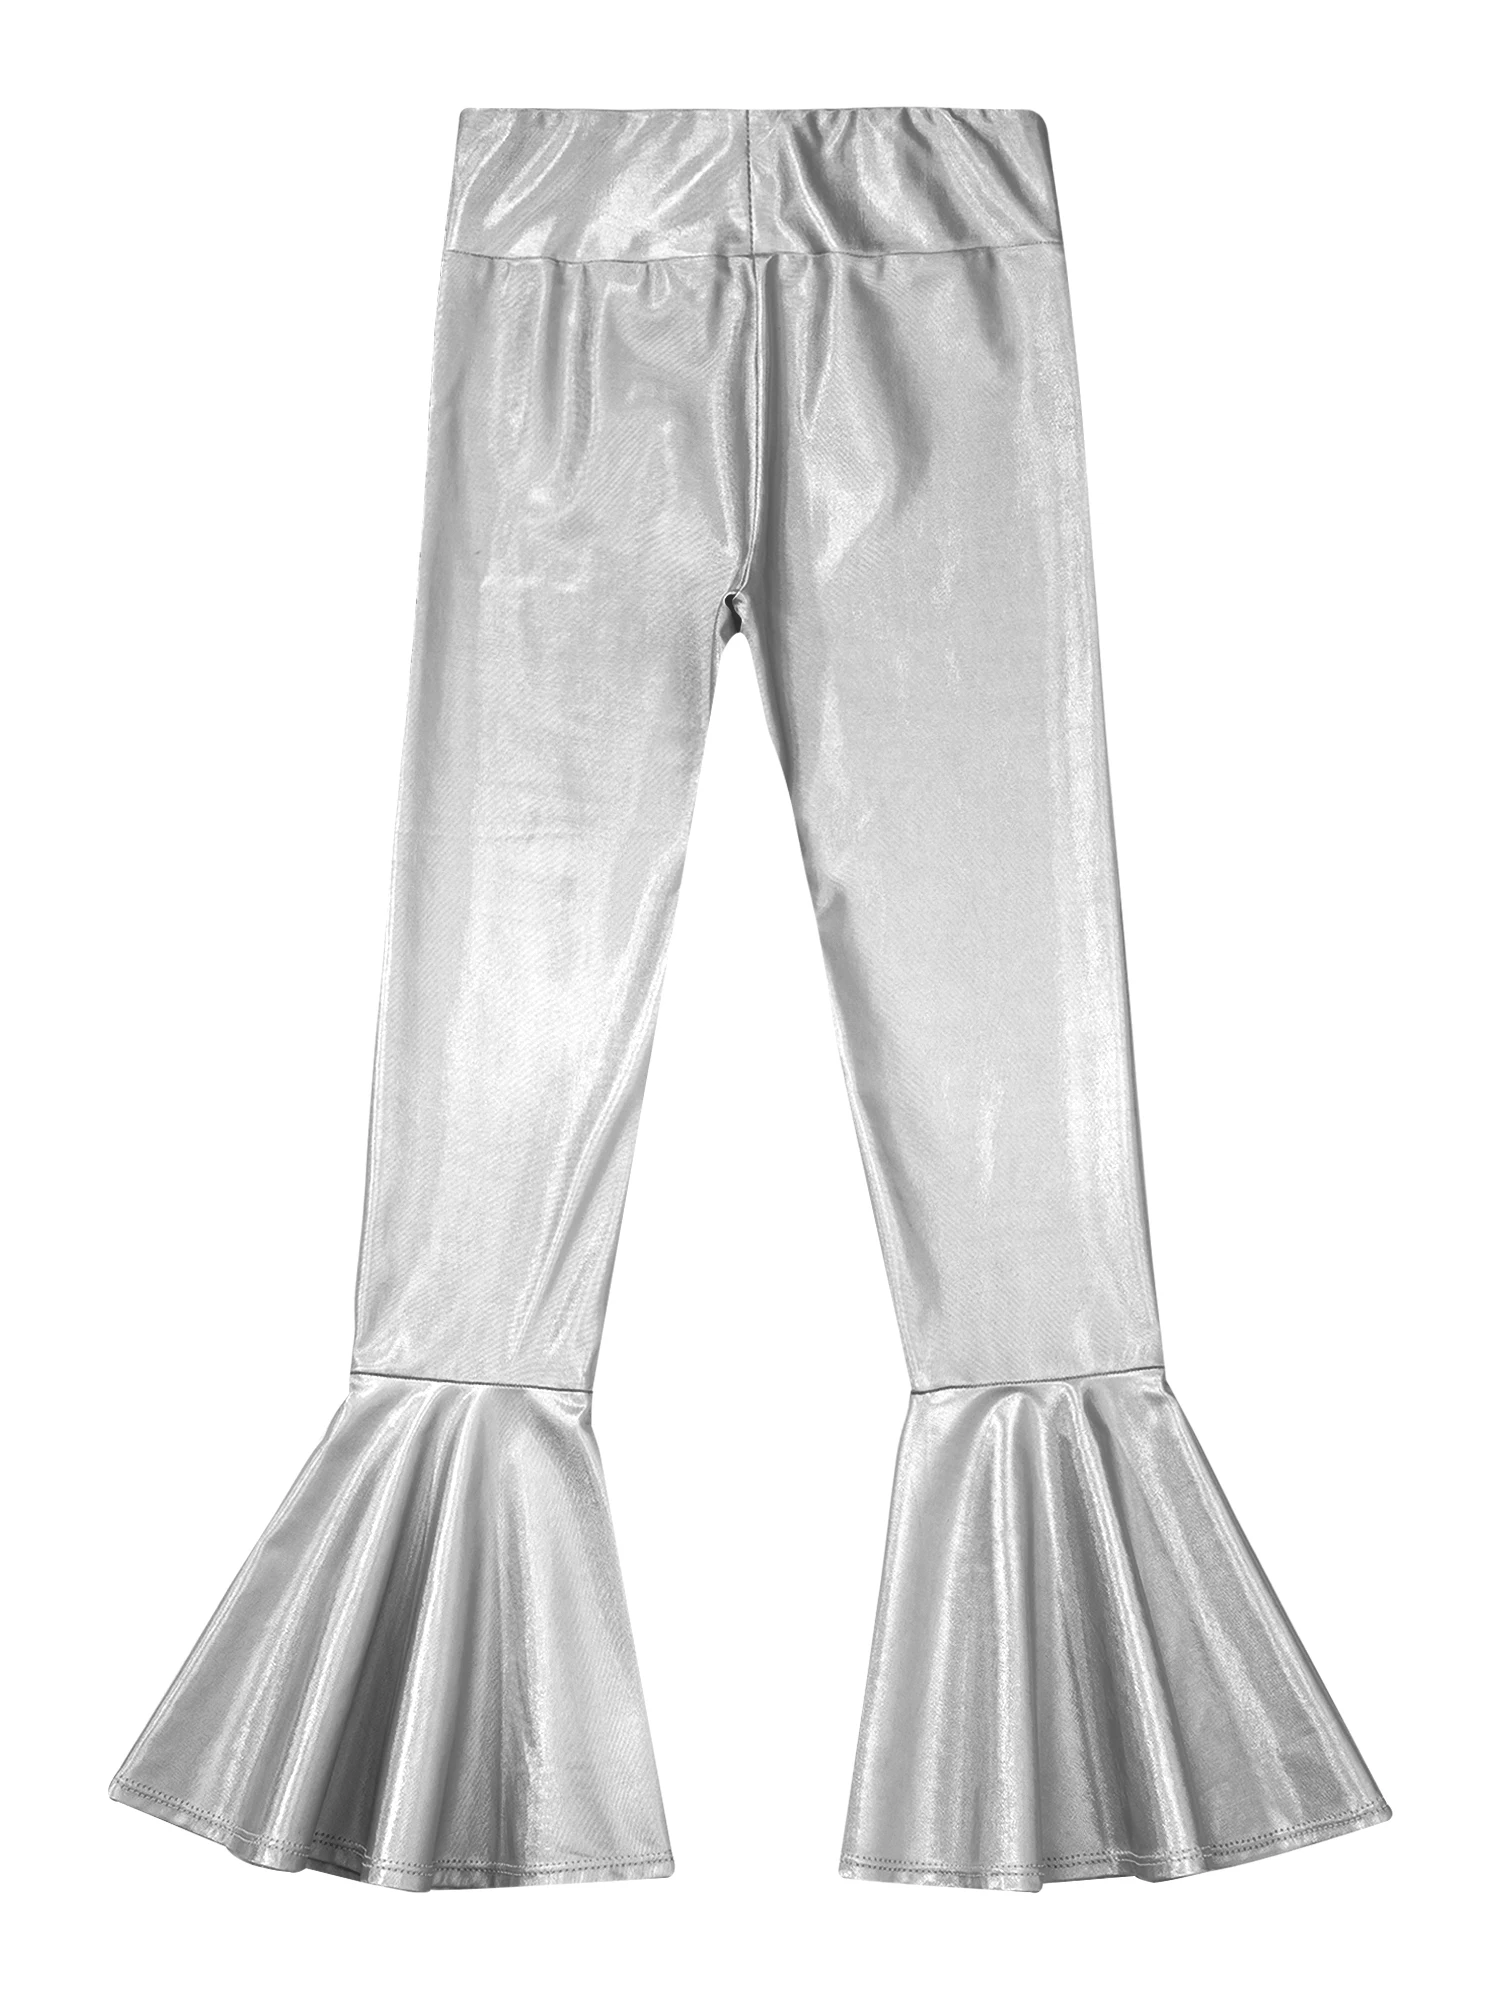 Girls Shiny Metallic Ruffled Long Pants Flares Trousers Dancewear Fashion Kids Leggings for Dancing Childrens Jazz Dance Costume